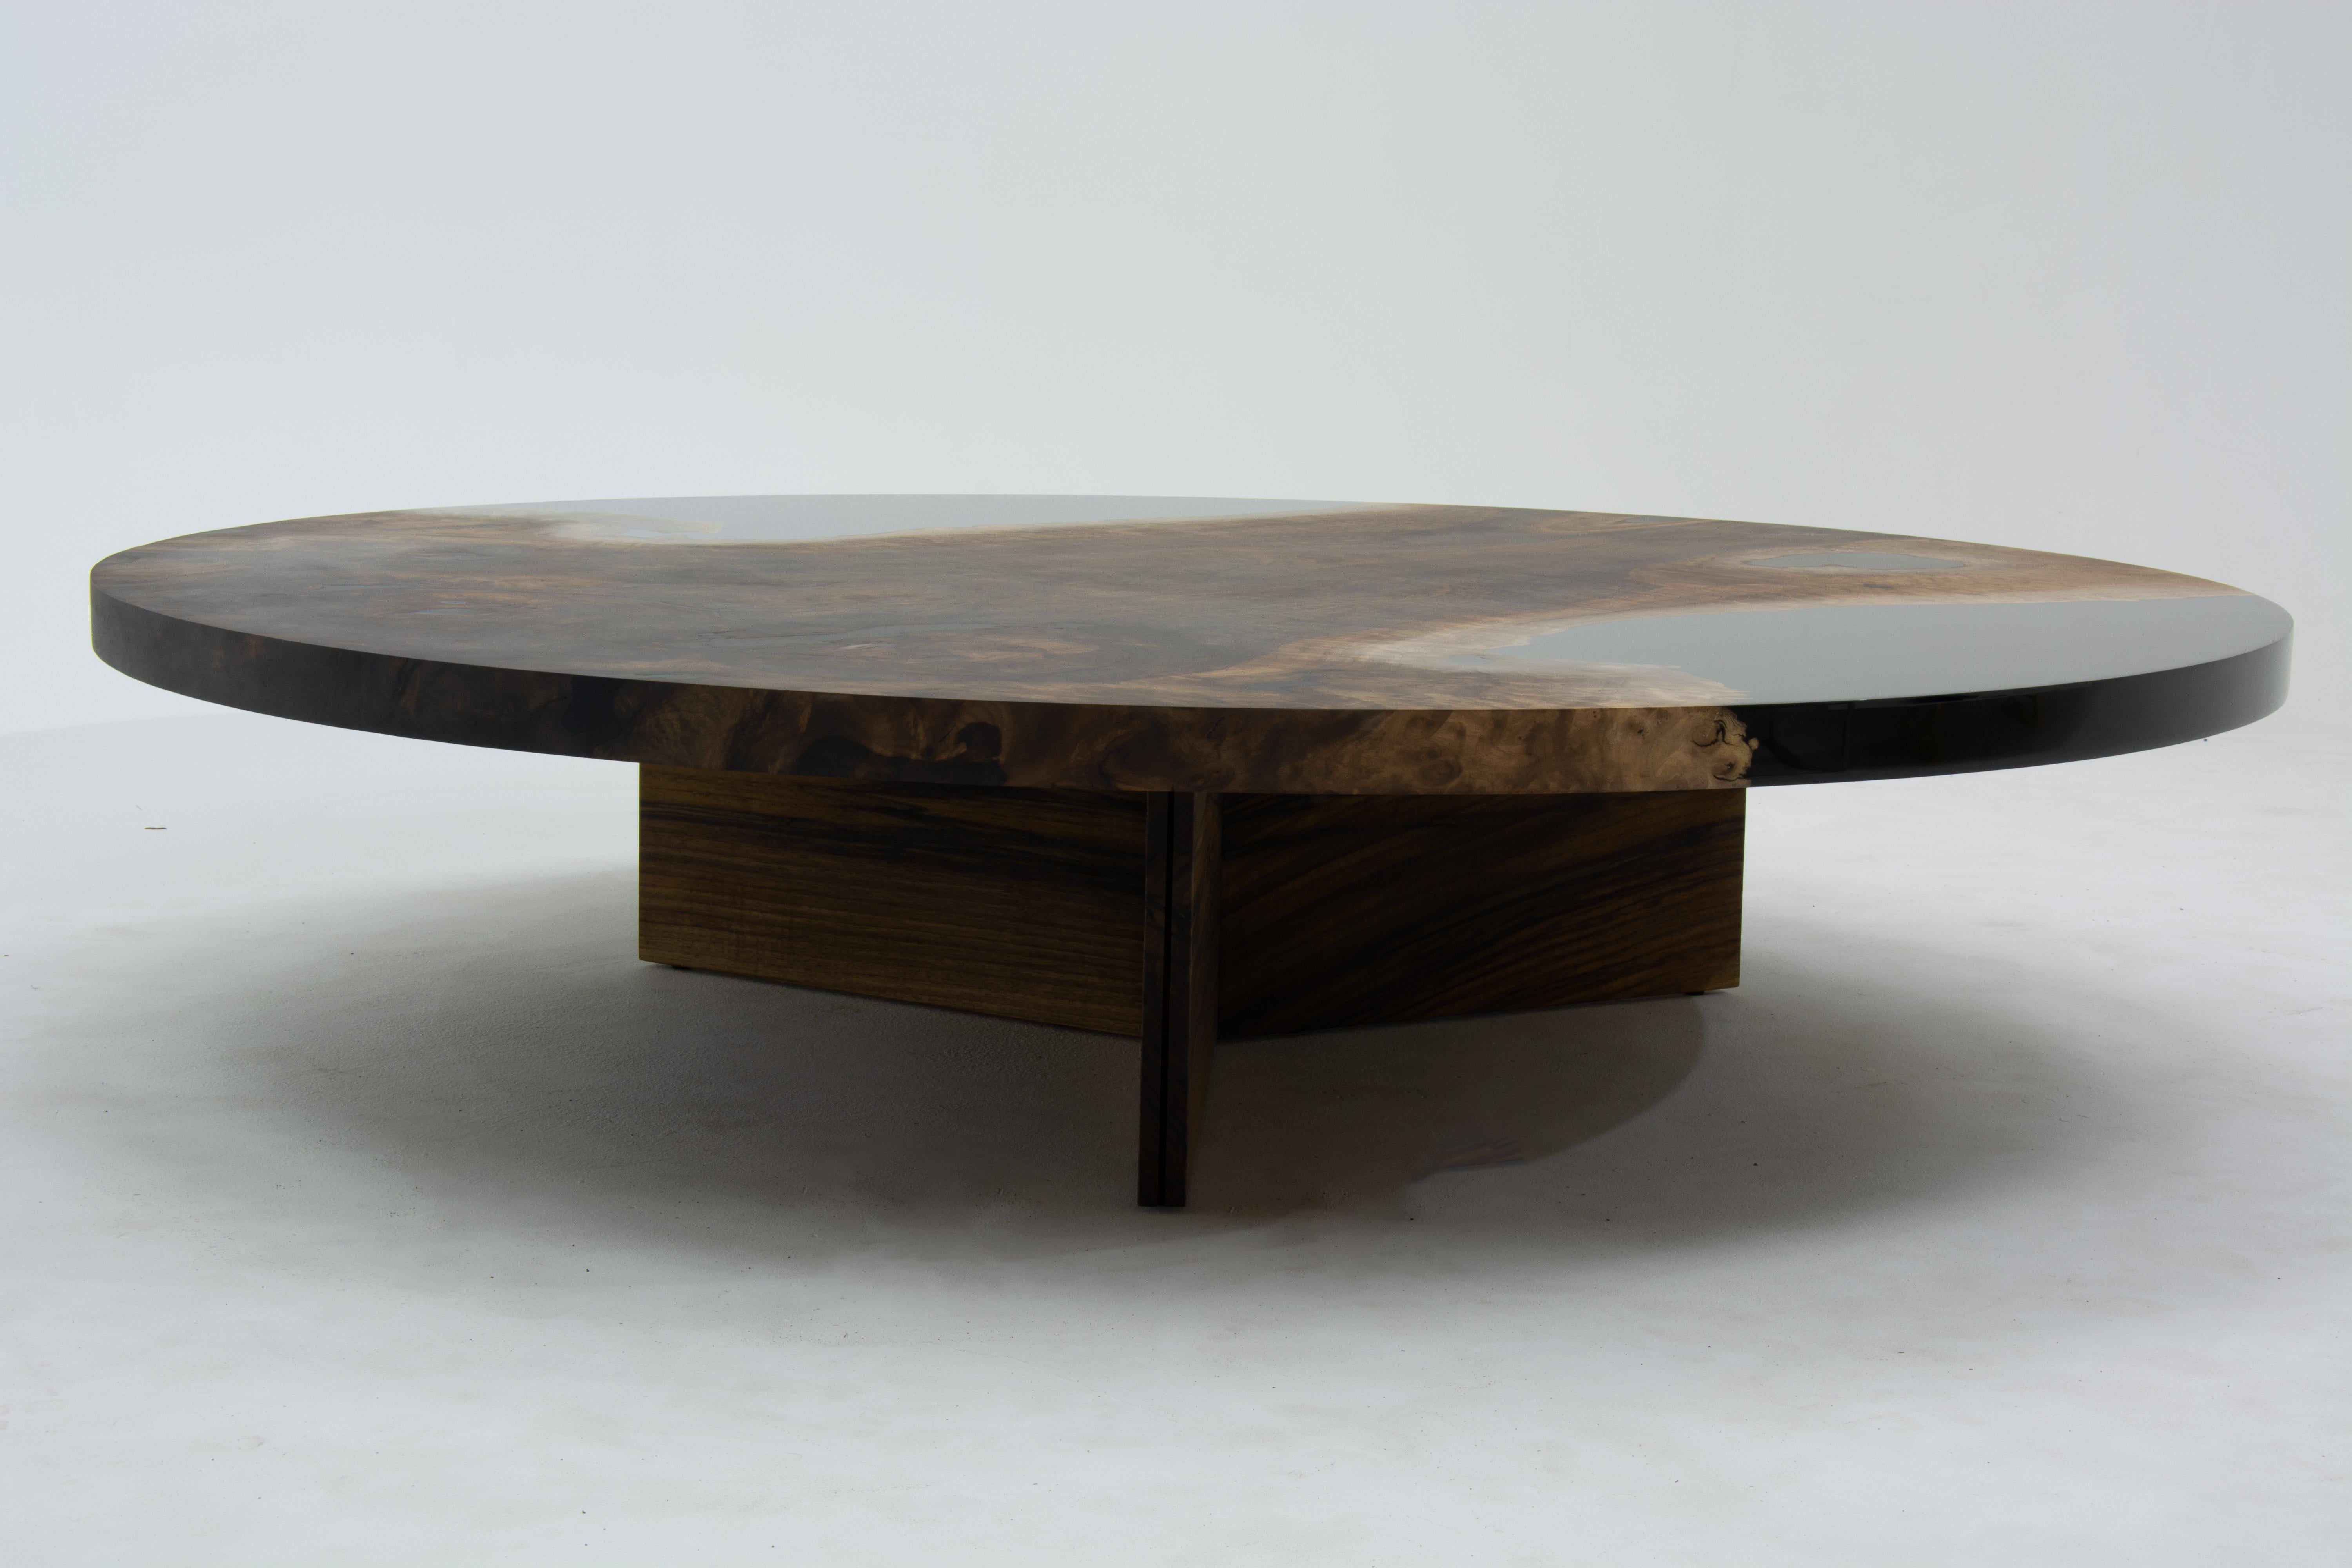 Table de salle à manger ronde en résine époxy transparente sur mesure en noyer 

Cette table basse est fabriquée en bois de noyer vieux de 500 ans. Les veines et la texture du bois décrivent l'aspect d'un bois de noyer naturel.
Elle peut être